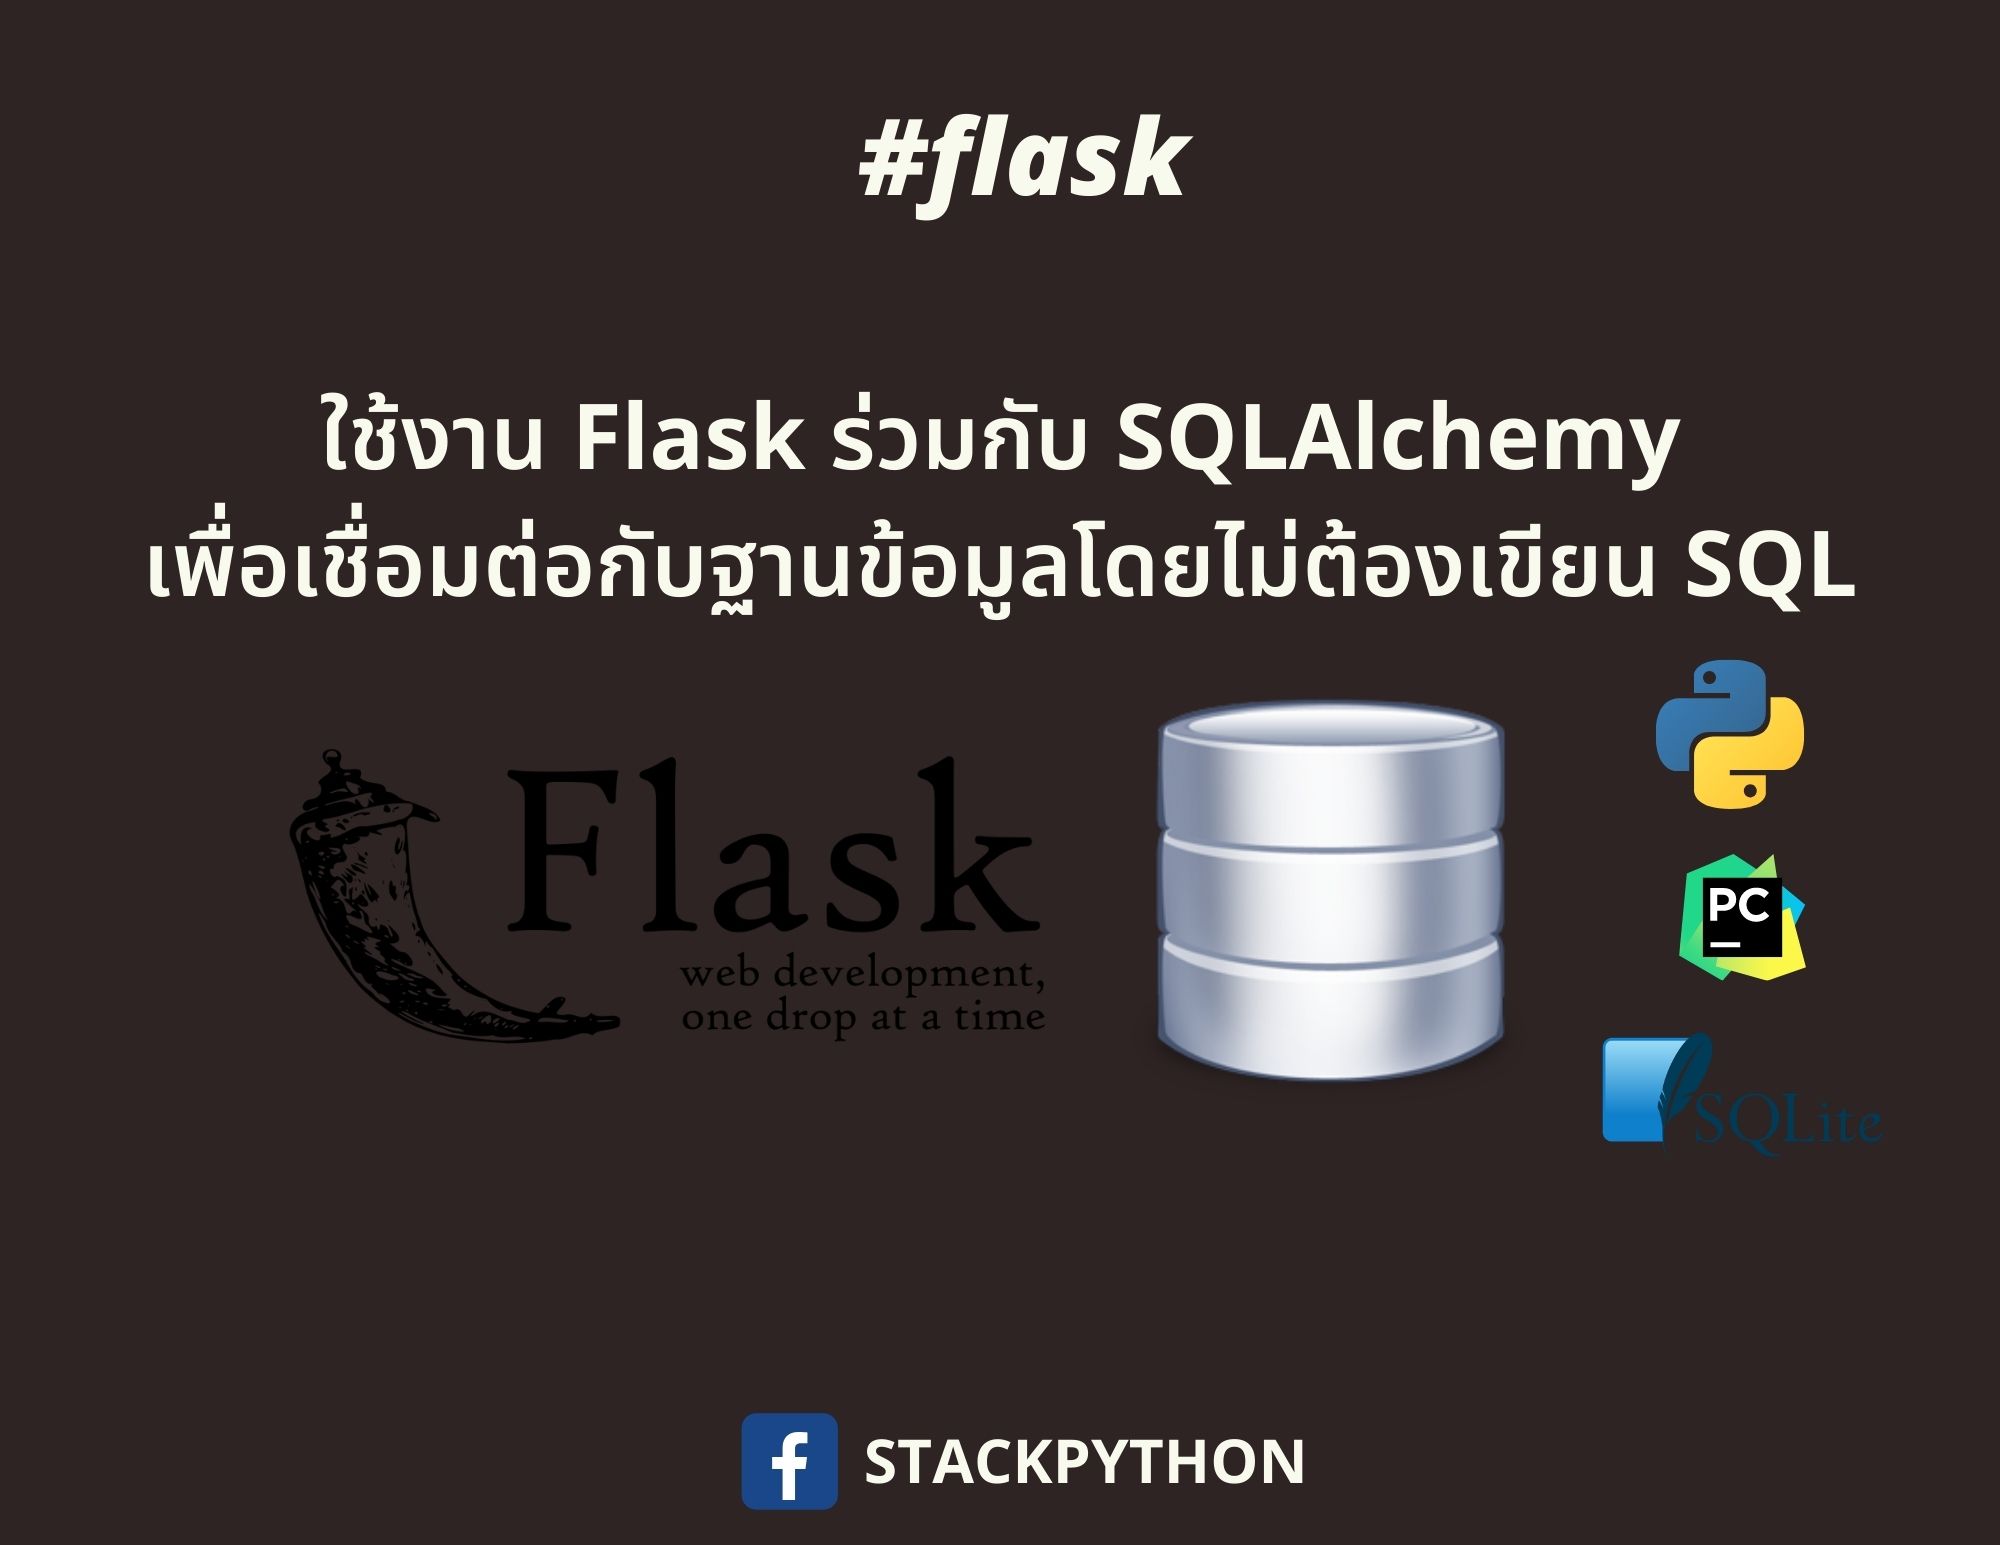 ใช้งาน Flask ร่วมกับ SQLAlchemy เพื่อเชื่อมต่อฐานข้อมูลโดยใช้ ORM